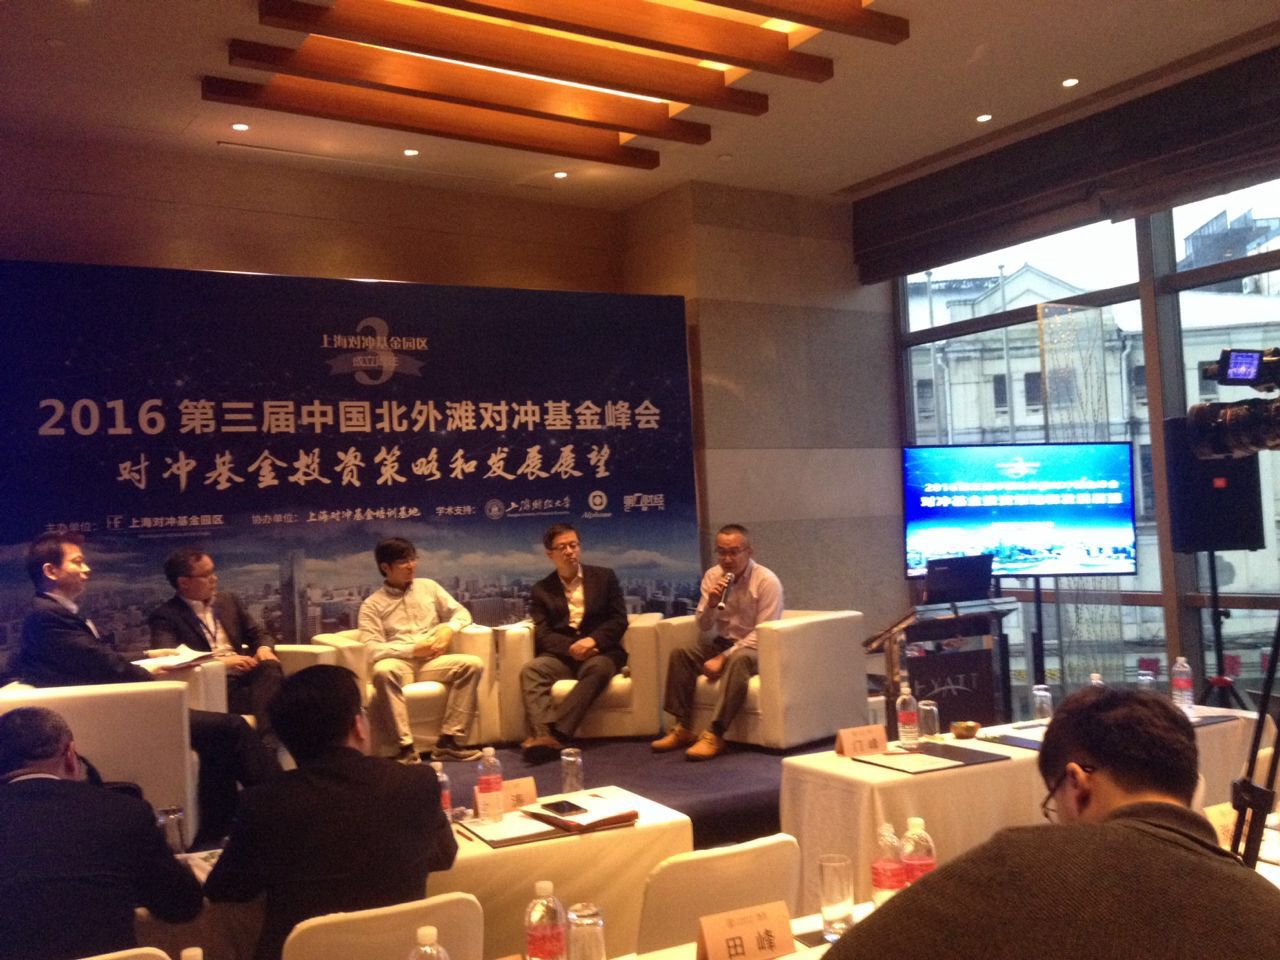 2016中国北外滩对冲基金峰会召开  大数据智能投资成焦点